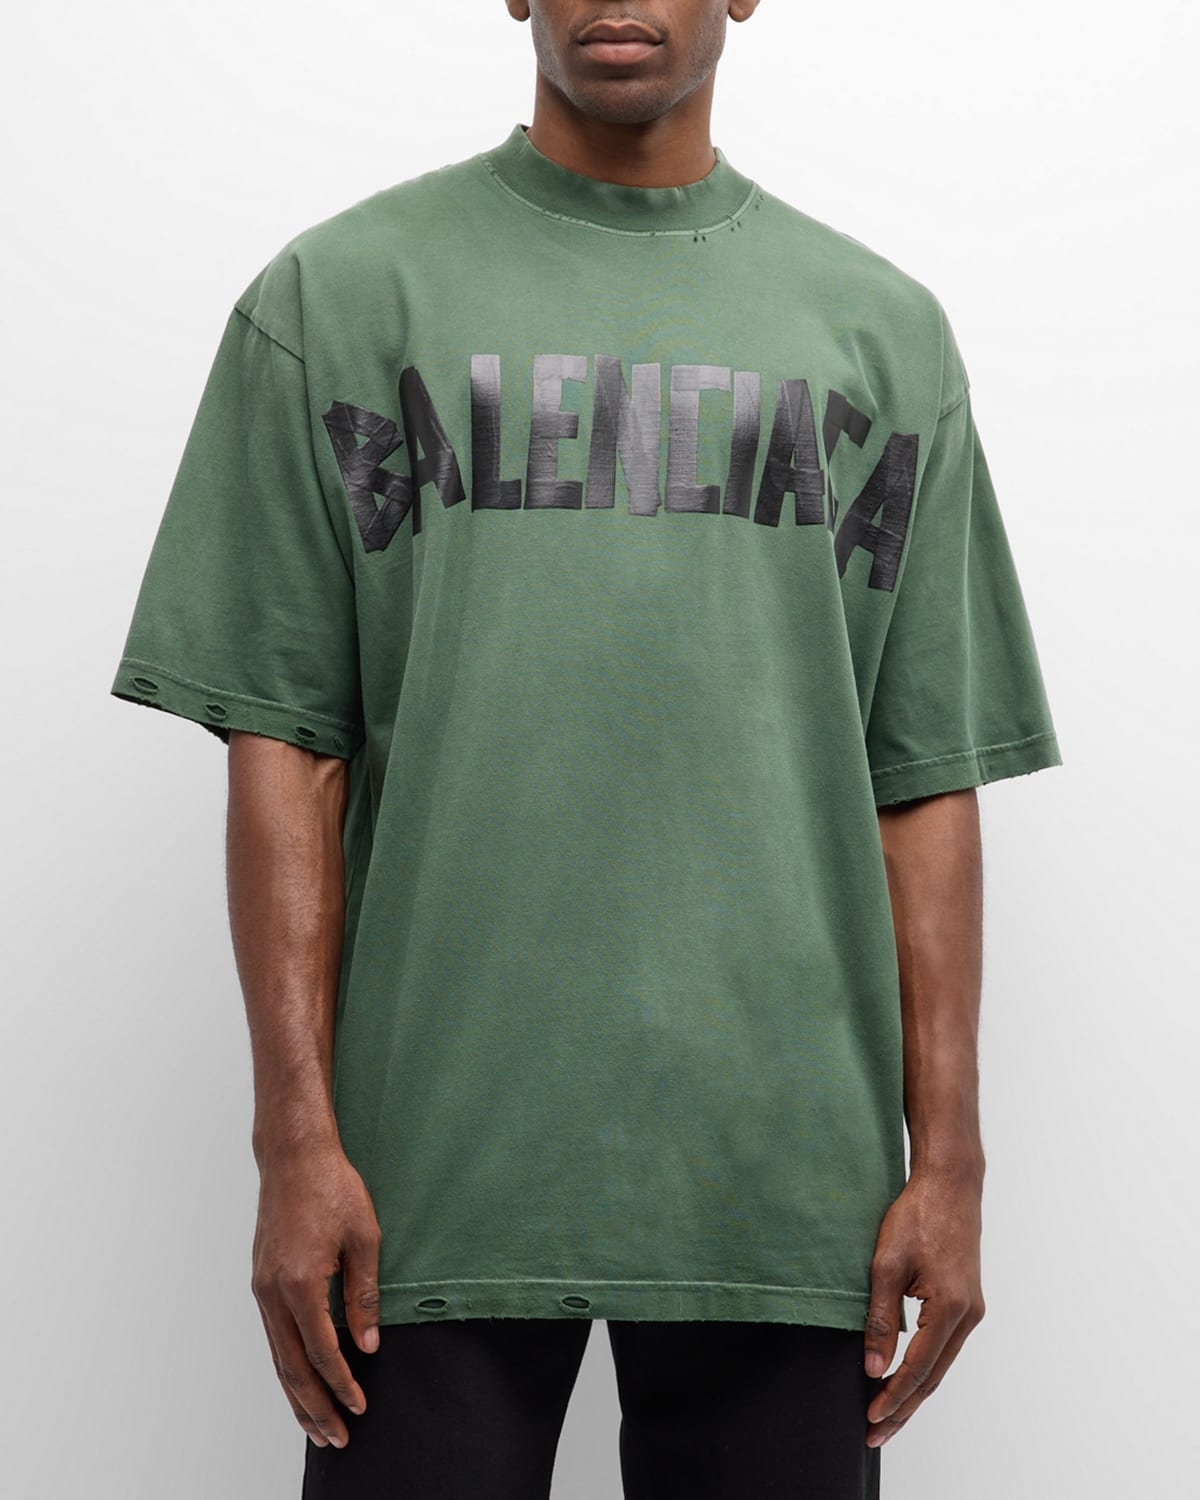 Men's Taped-Logo Distressed T-Shirt